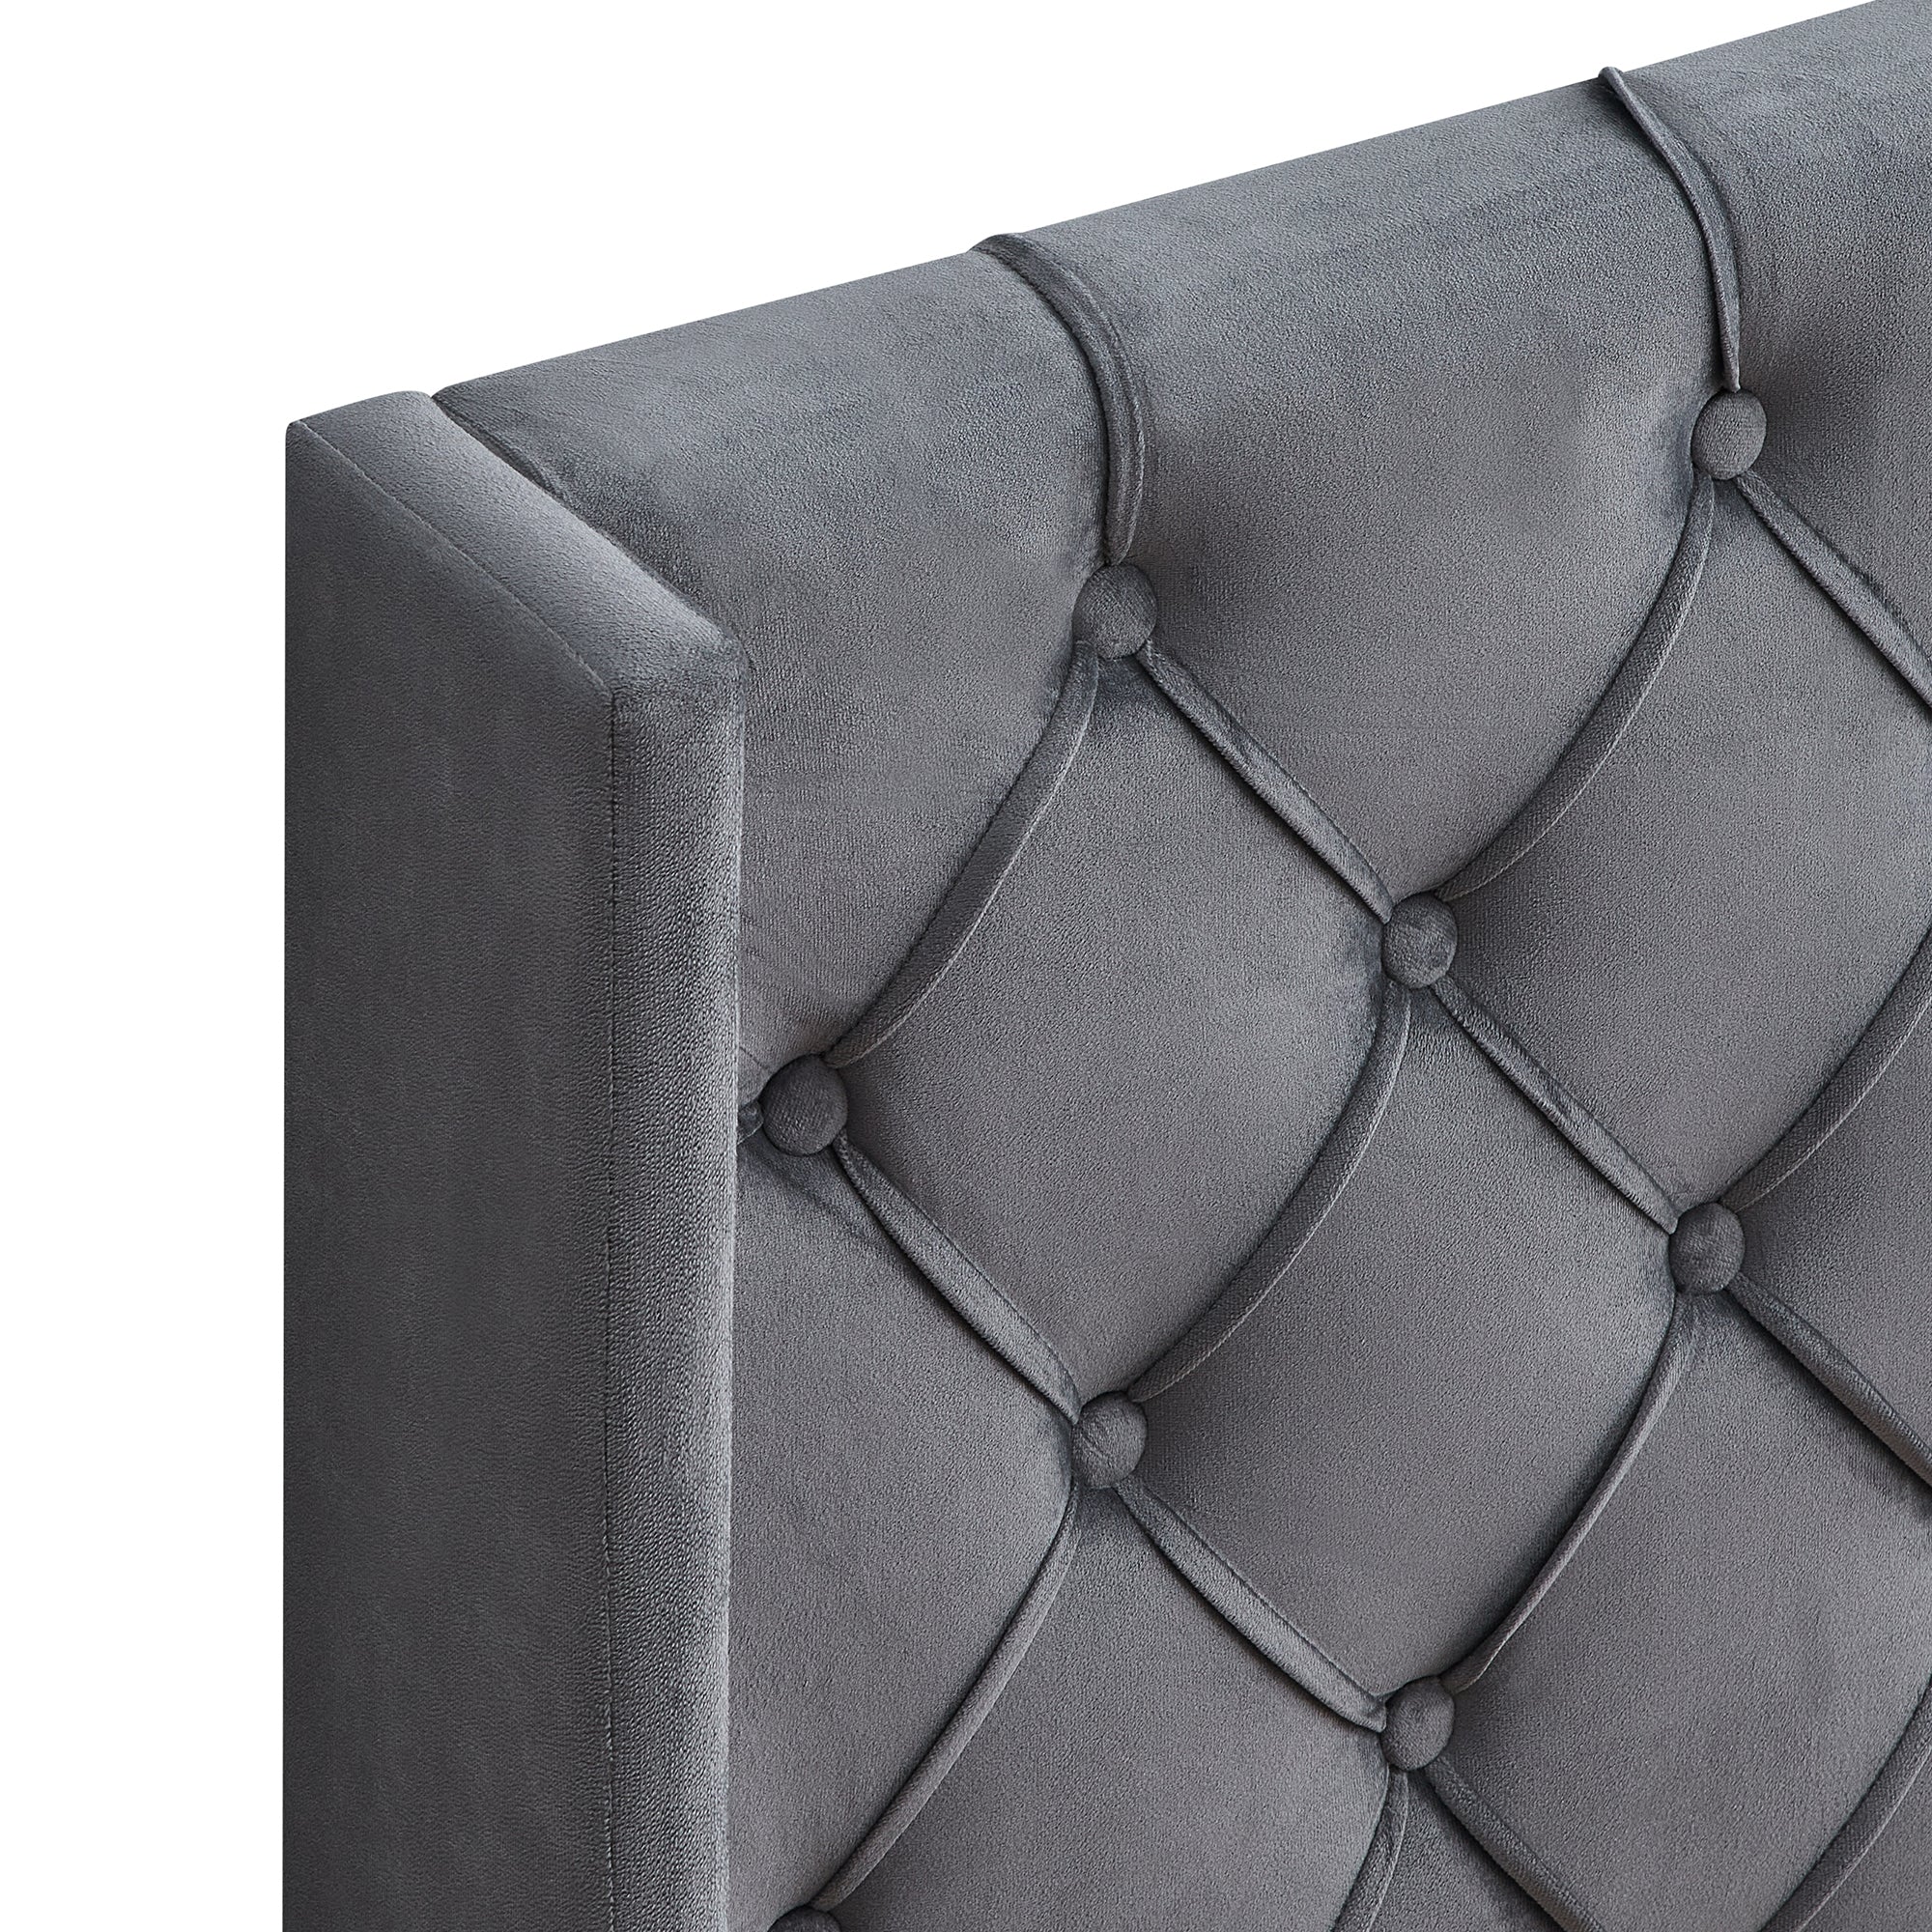 Velvet Button Tufted Upholstered Bed with Wings Design gray-velvet